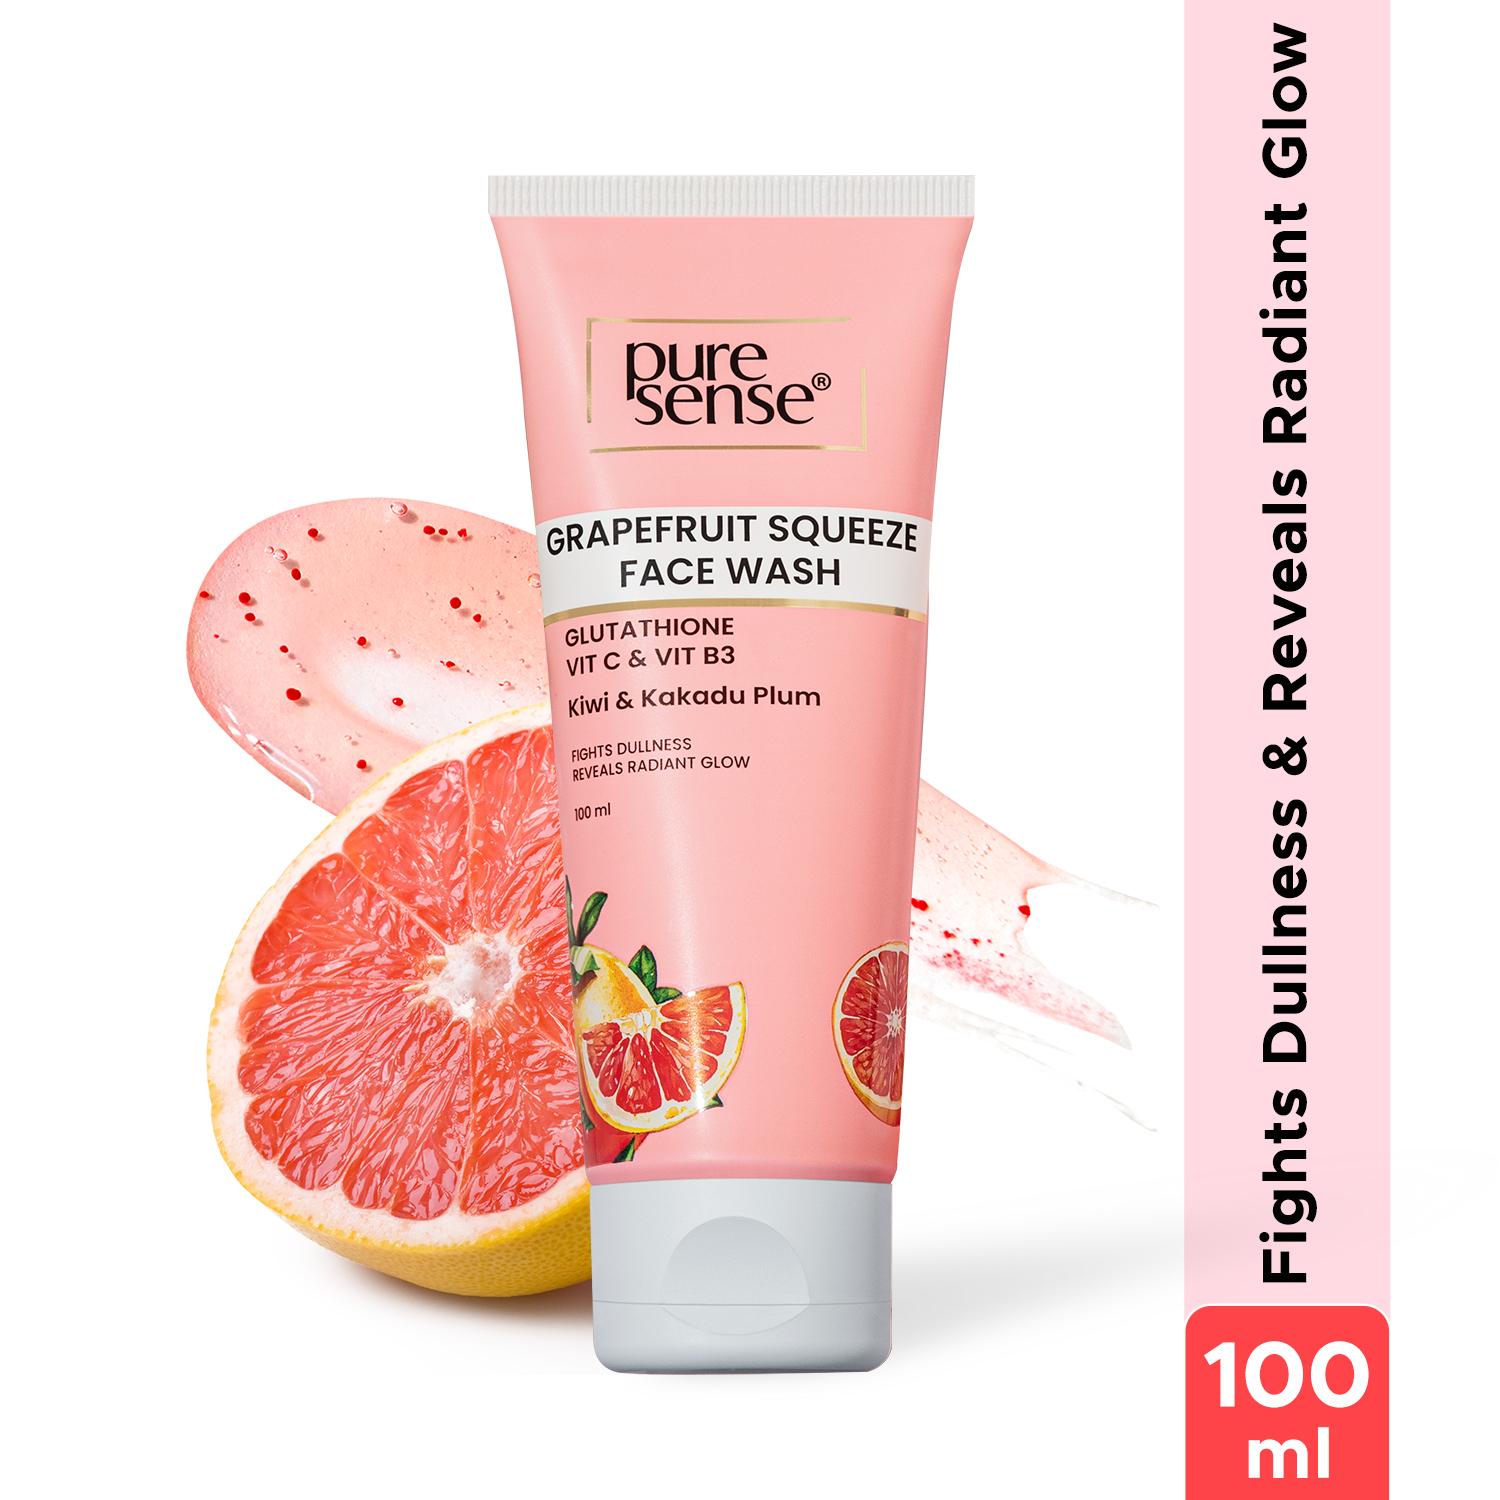 Pure Sense | Pure Sense Grapefruit Squeeze Face Wash (100 ml)